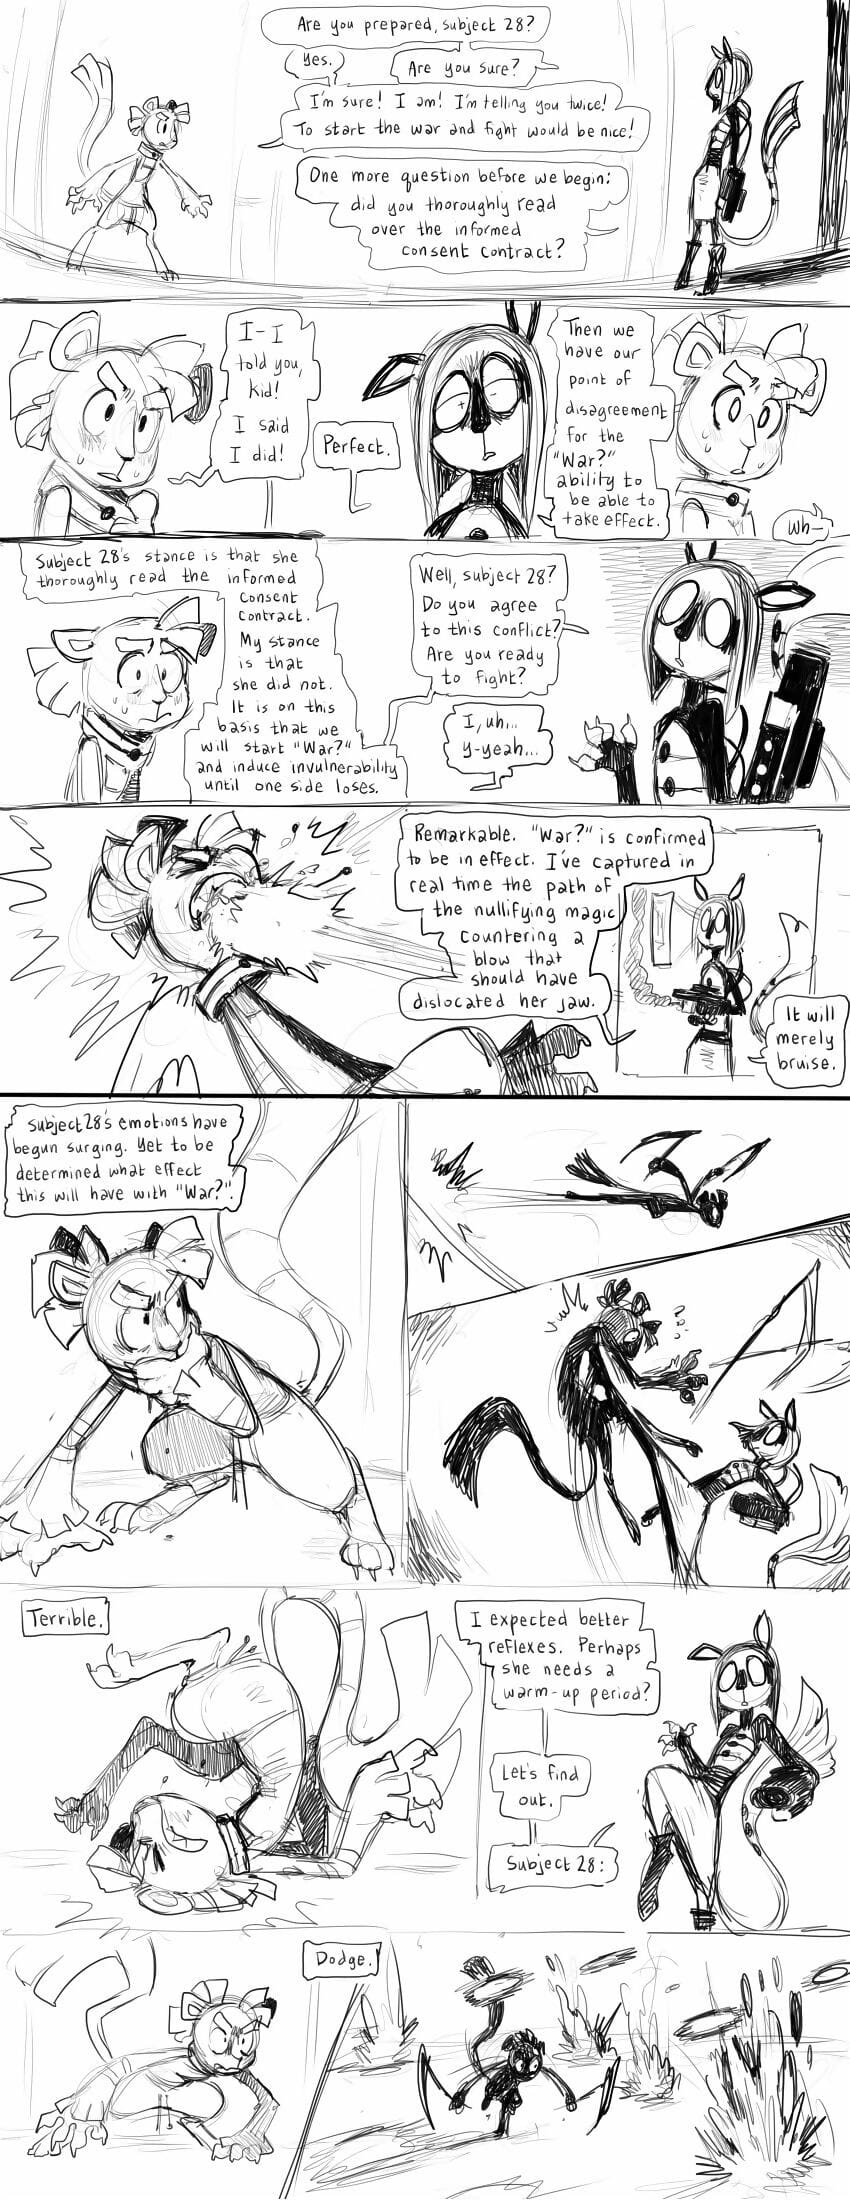 divers comics PARTIE 3 page 1